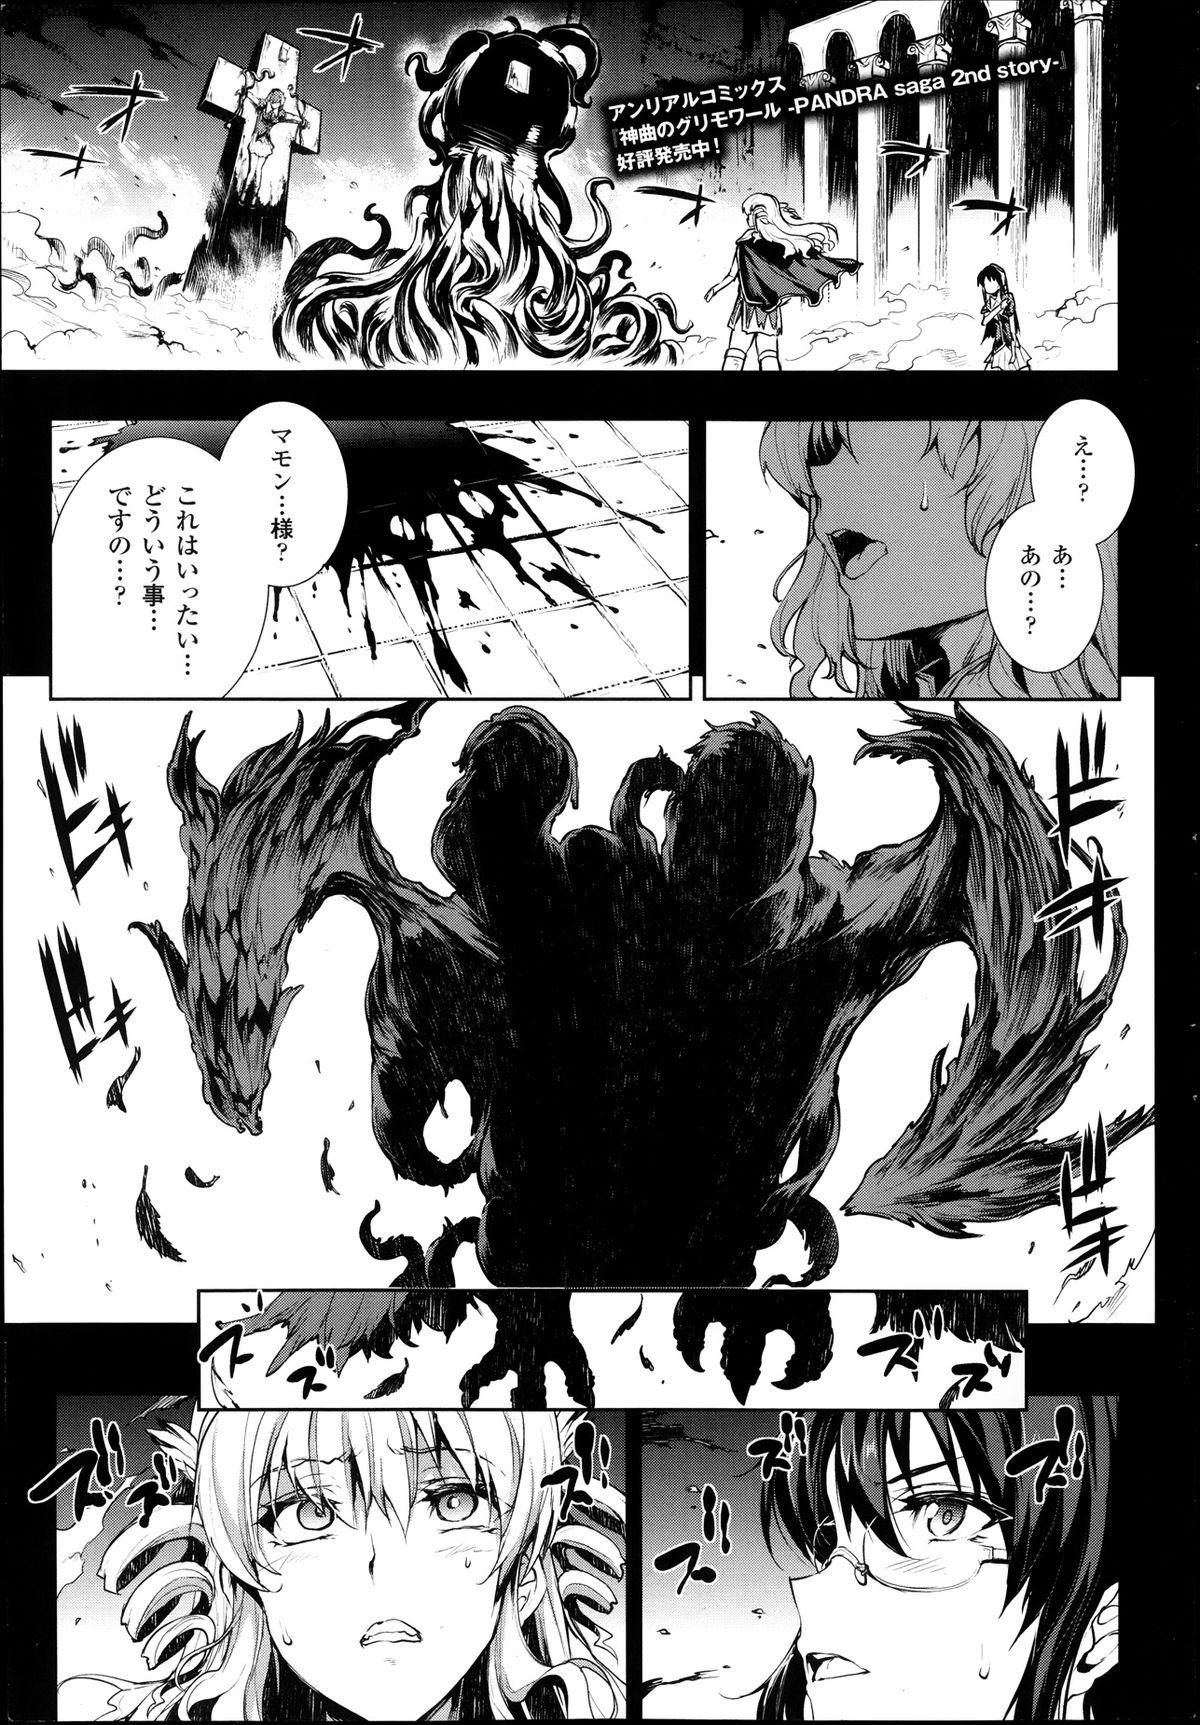 [Erect Sawaru] Shinkyoku no Grimoire -PANDRA saga 2nd story- Ch 07-9.5 53